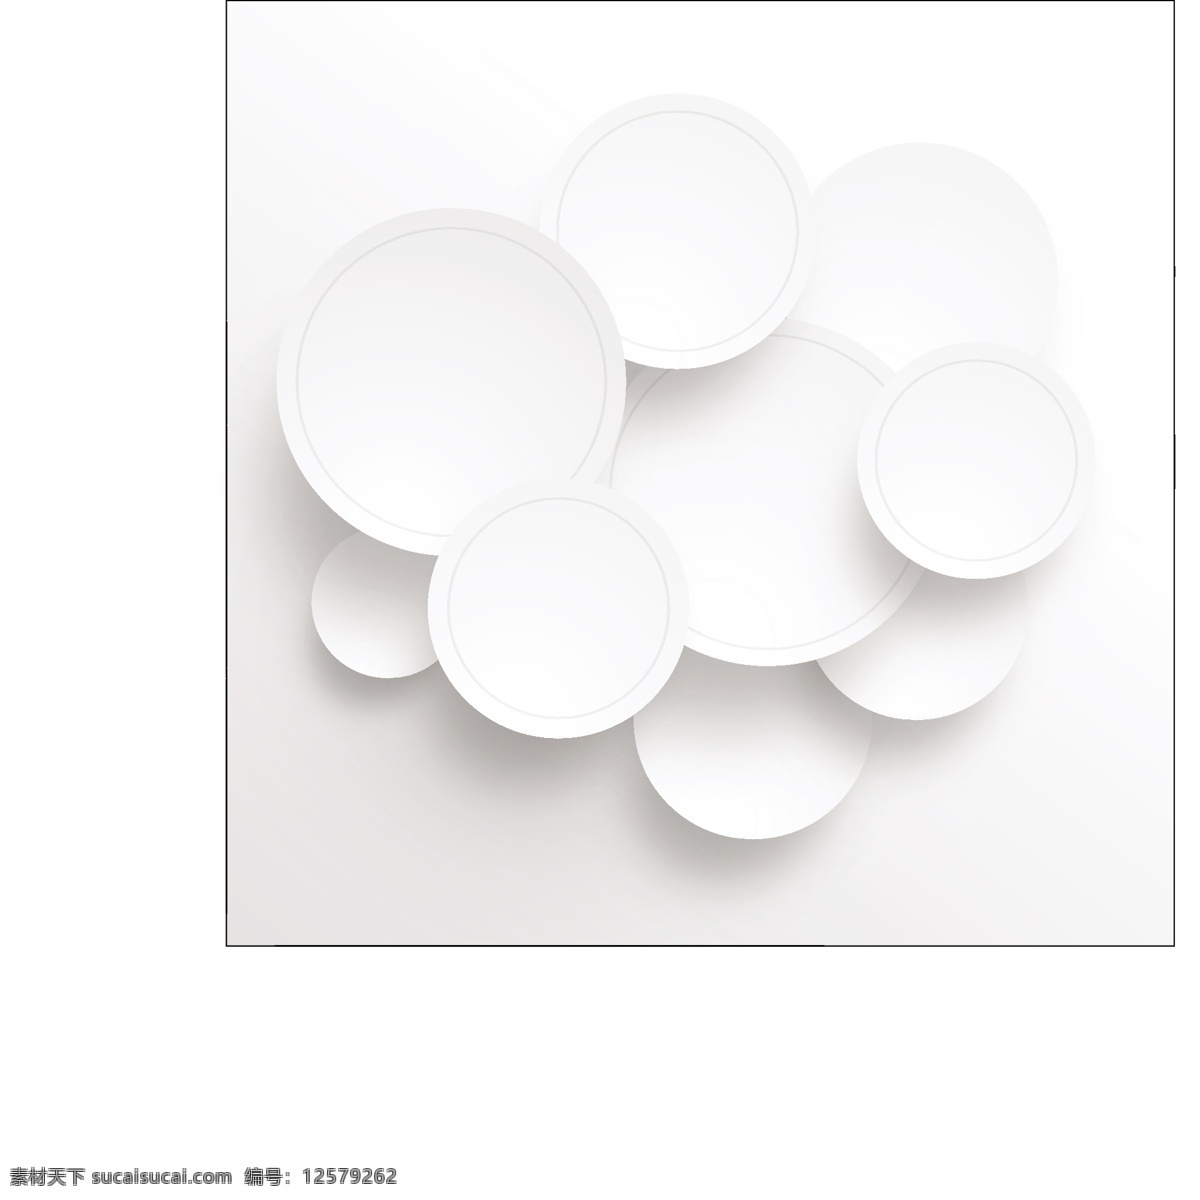 几何圆圈贴纸 标签 几何 贴纸 白色 形状 现代 圆形 抽象